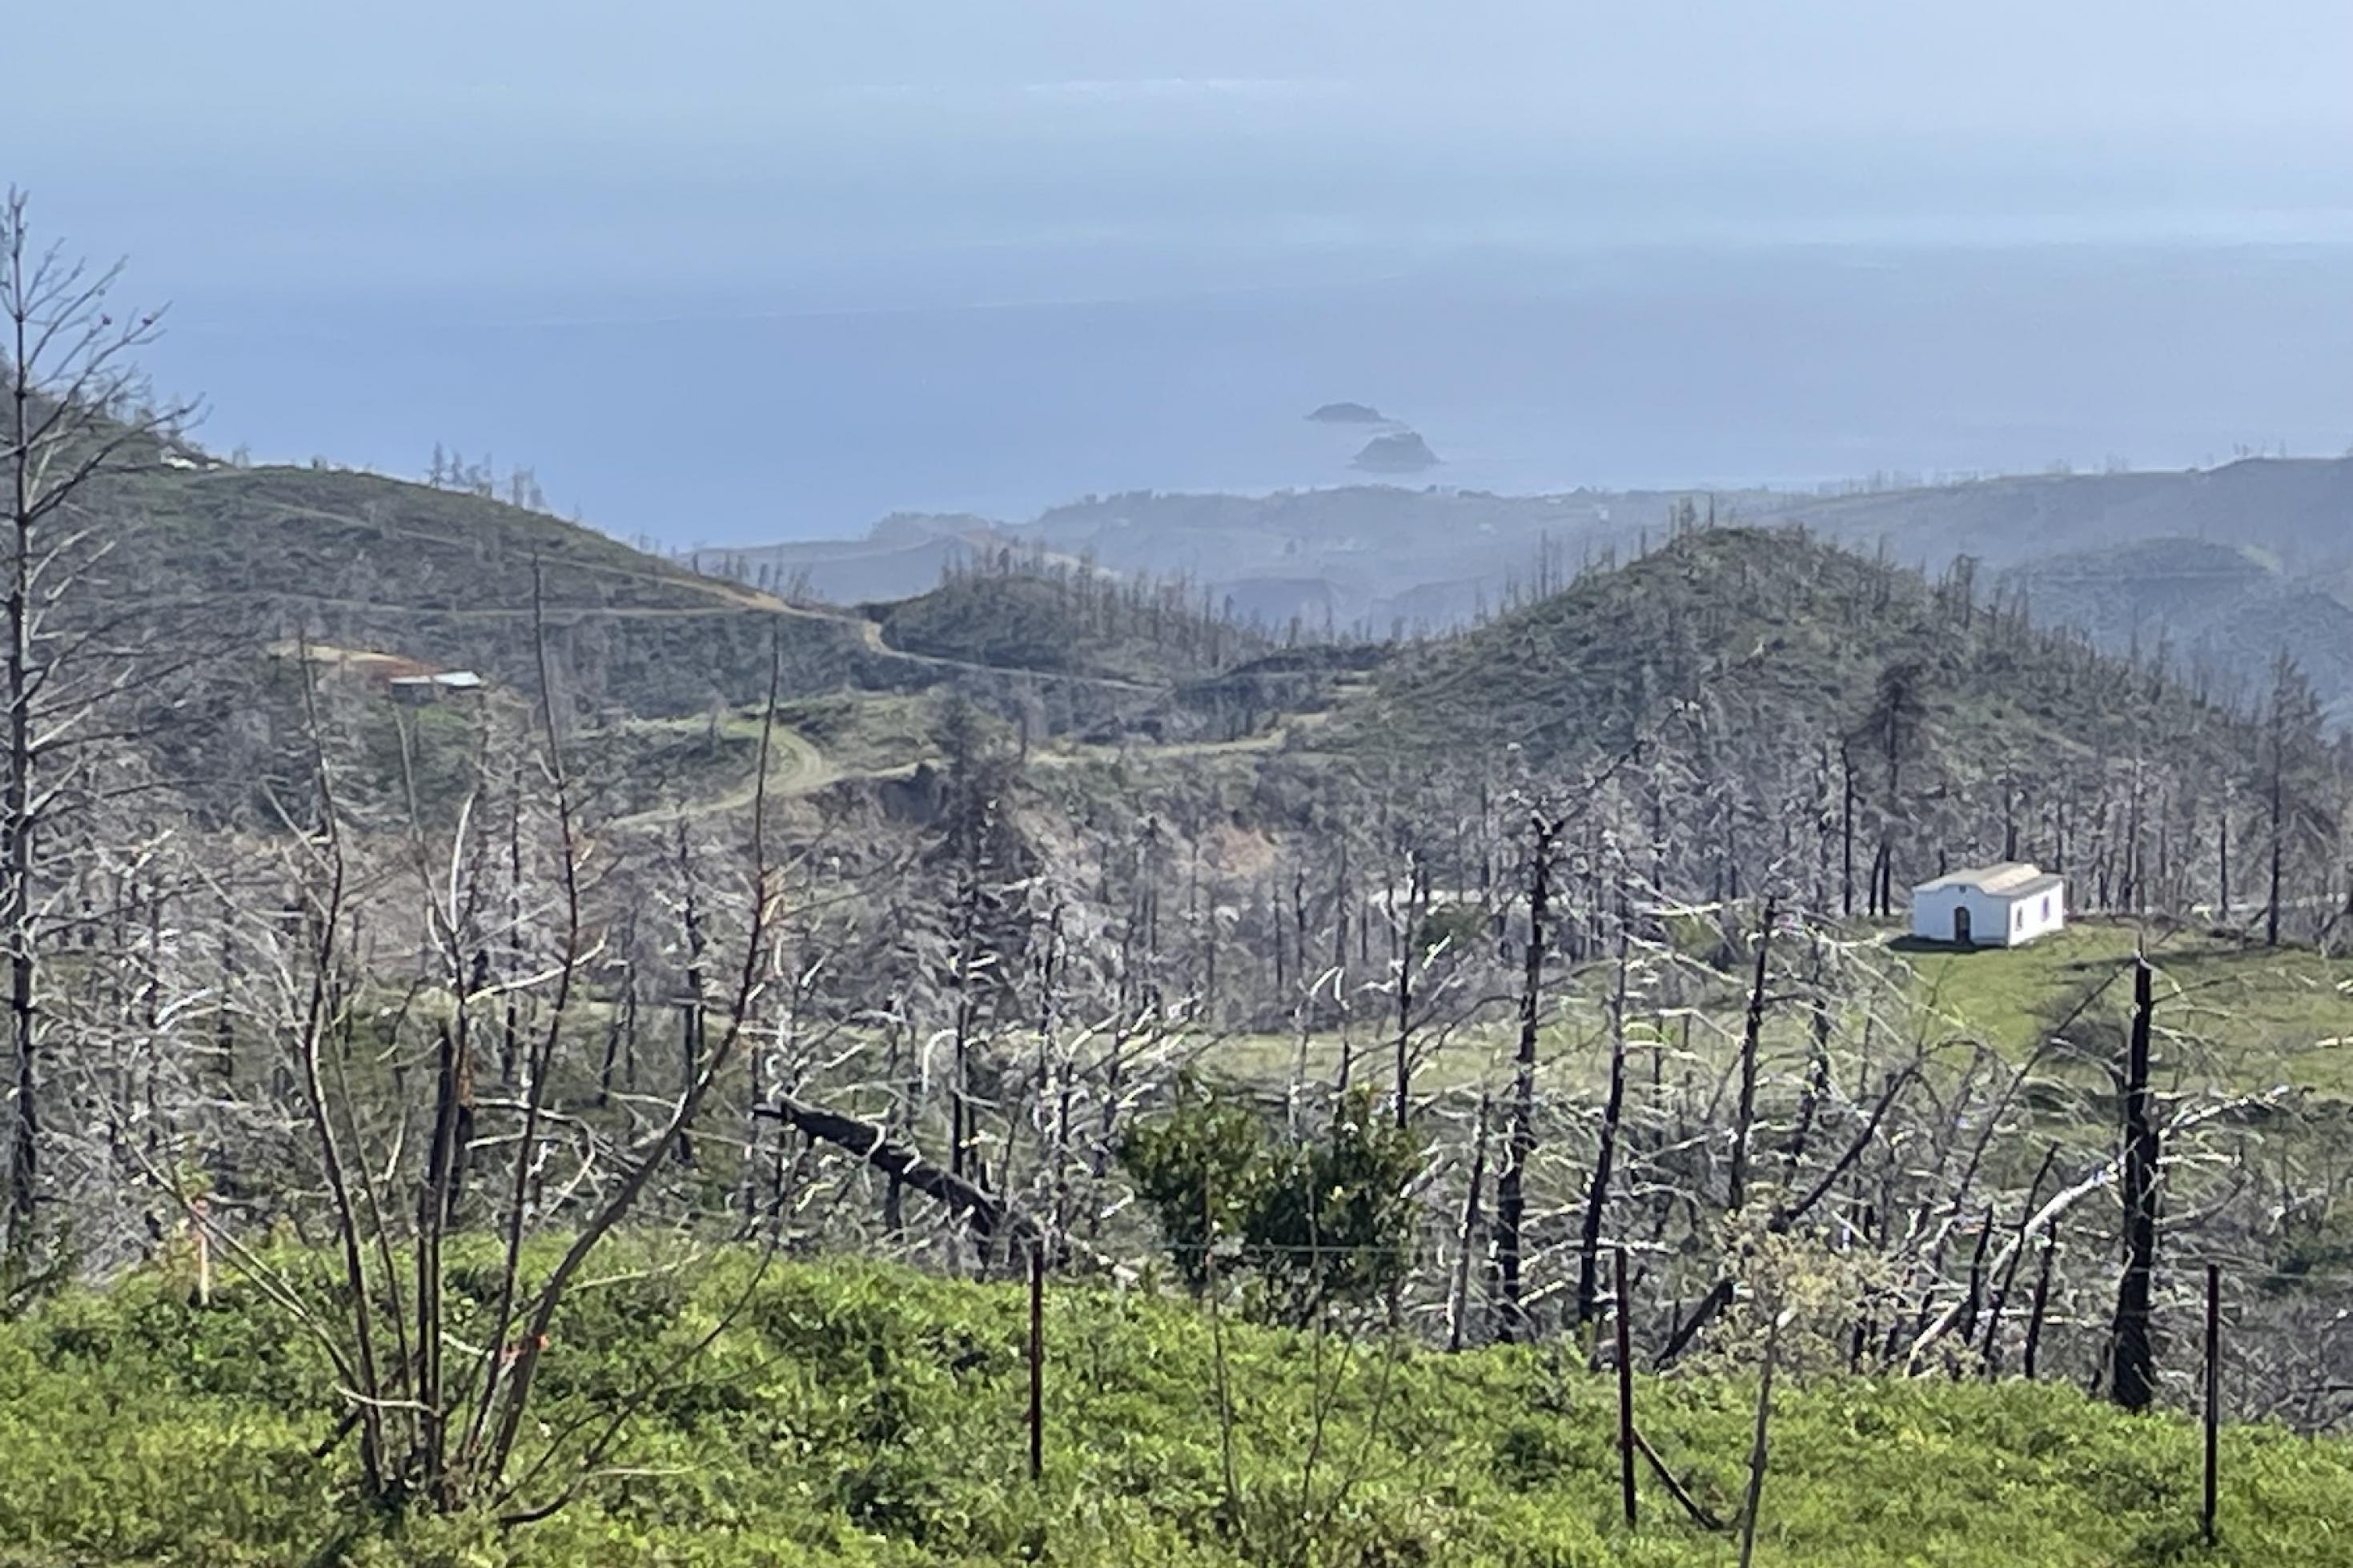 Abgestorbene Bäume über nachwachsendem Grün in einer hügeligen Landschaft. Das Bild ist im Norden der Insel Euböa entstanden, wo große Waldgebiete vom Feuer zerstört wurden.